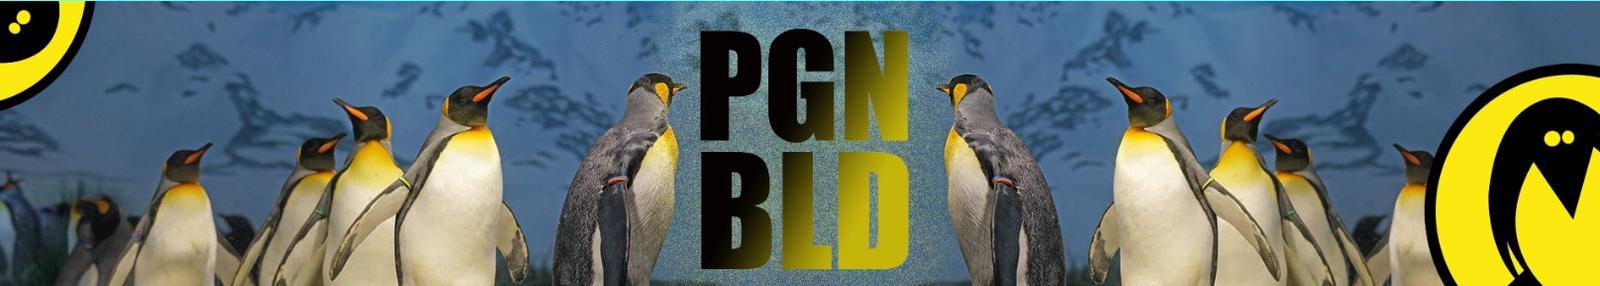 Penguin Blend Title Image